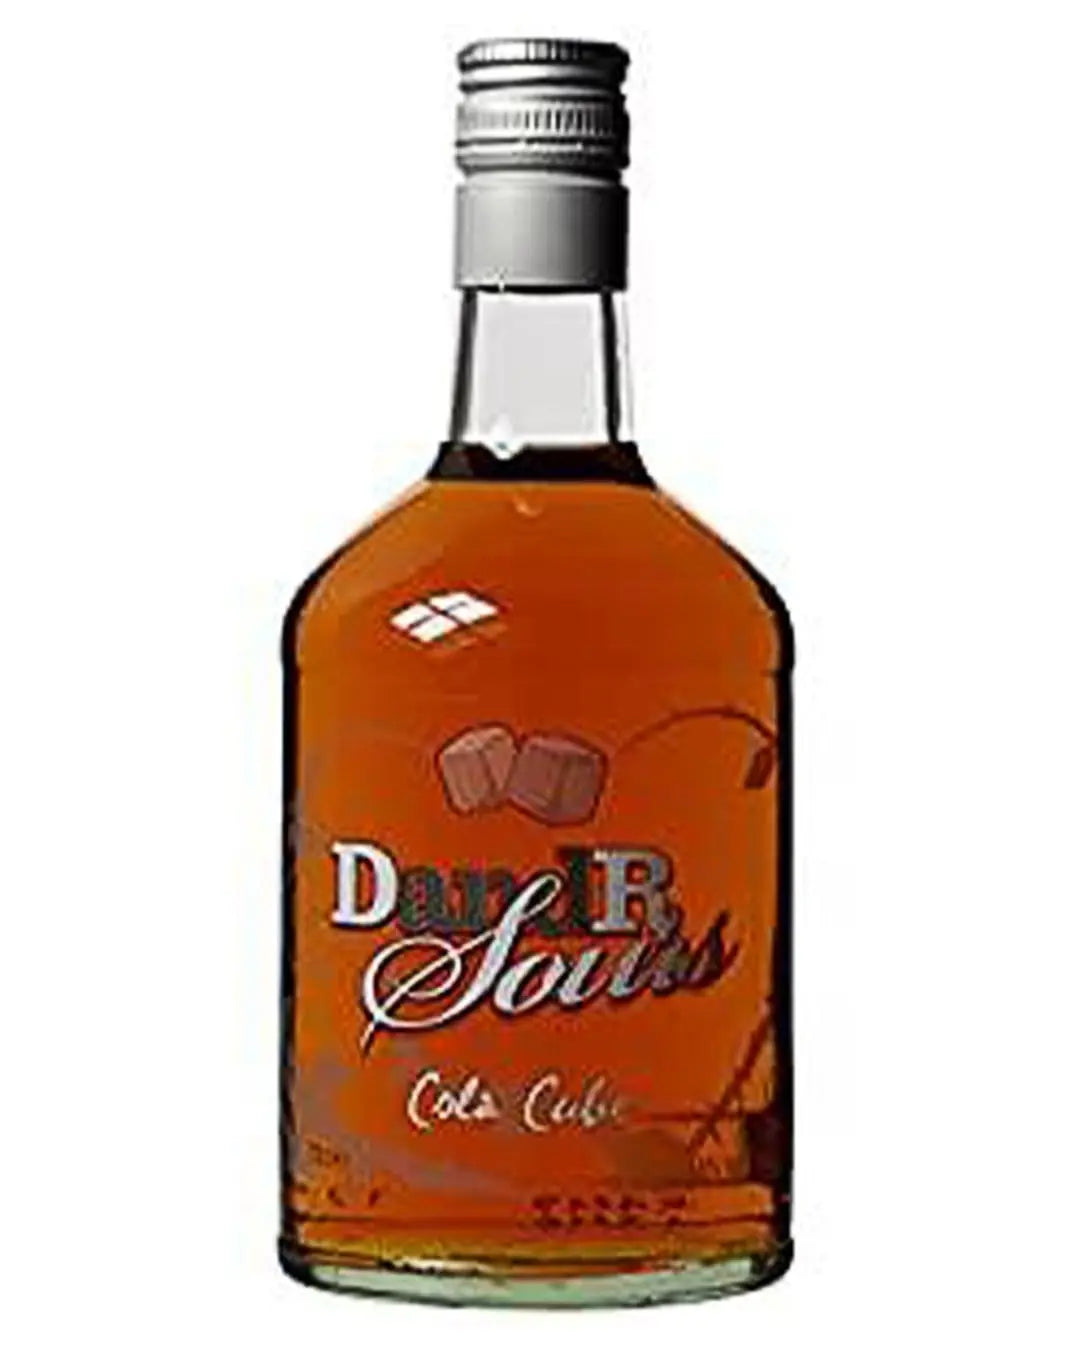 DandR Sours Cola Cube, 70 cl Liqueurs & Other Spirits